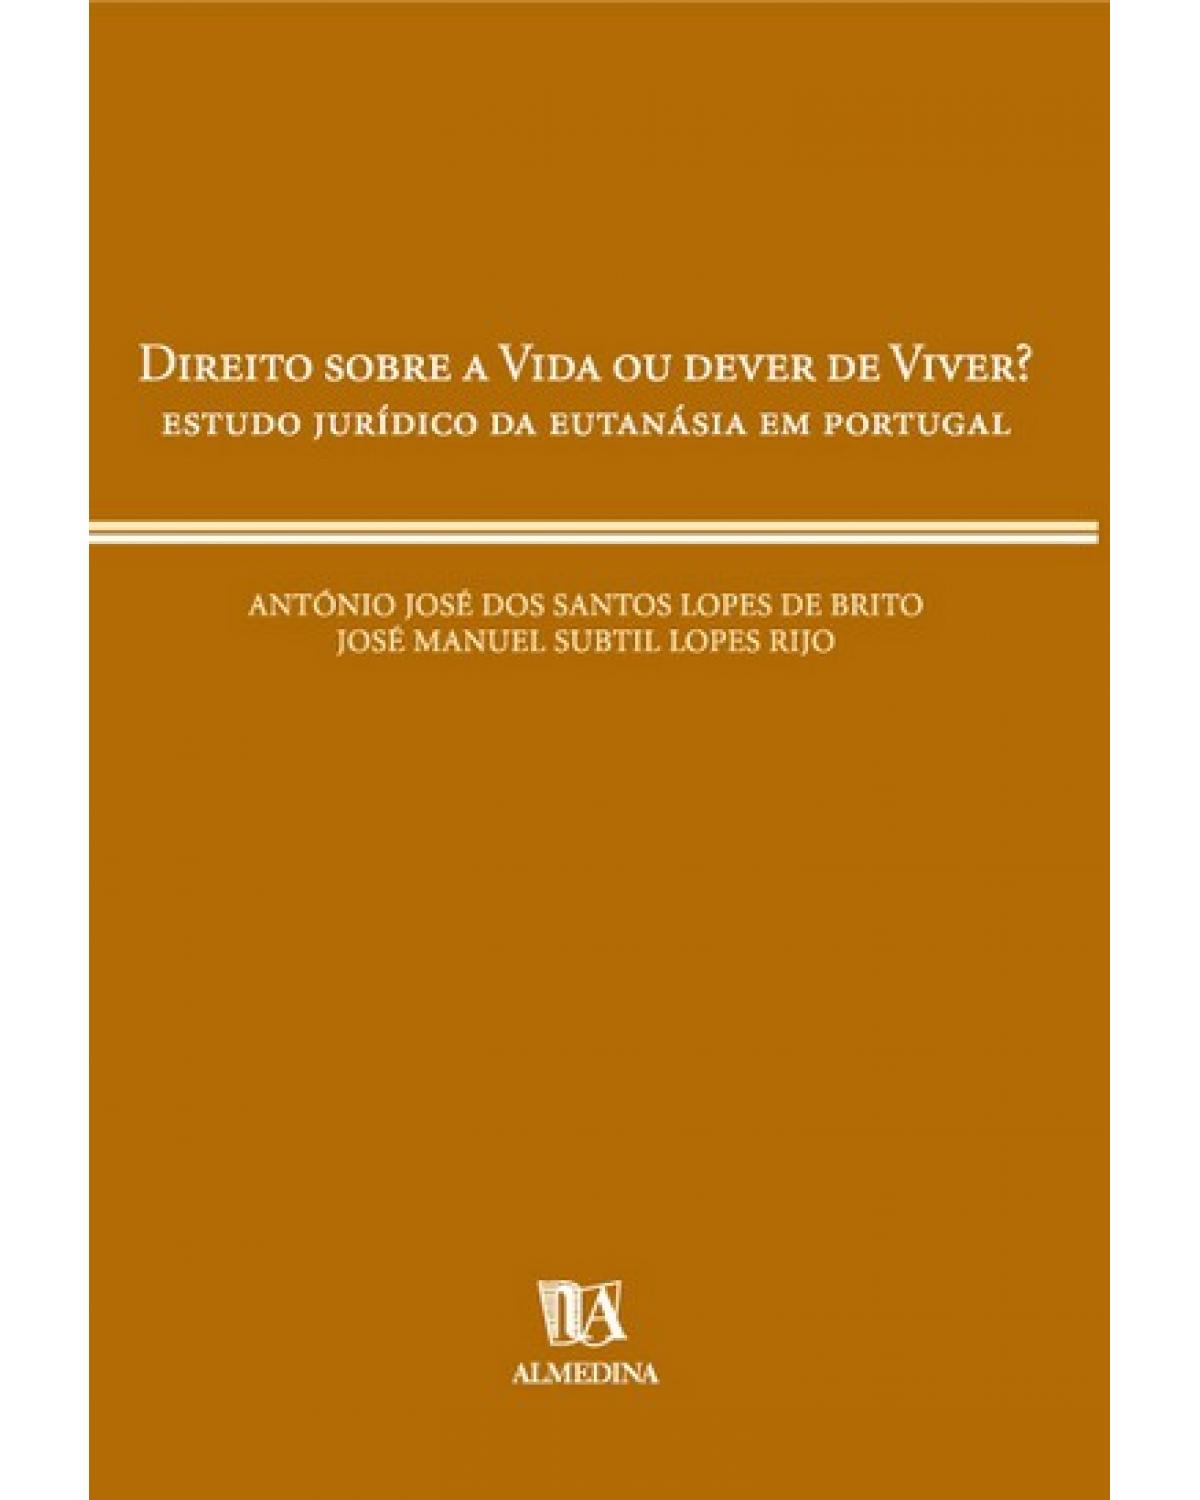 Direito sobre a vida ou dever de viver? - estudo jurídico da eutanásia em Portugal - 1ª Edição | 2000